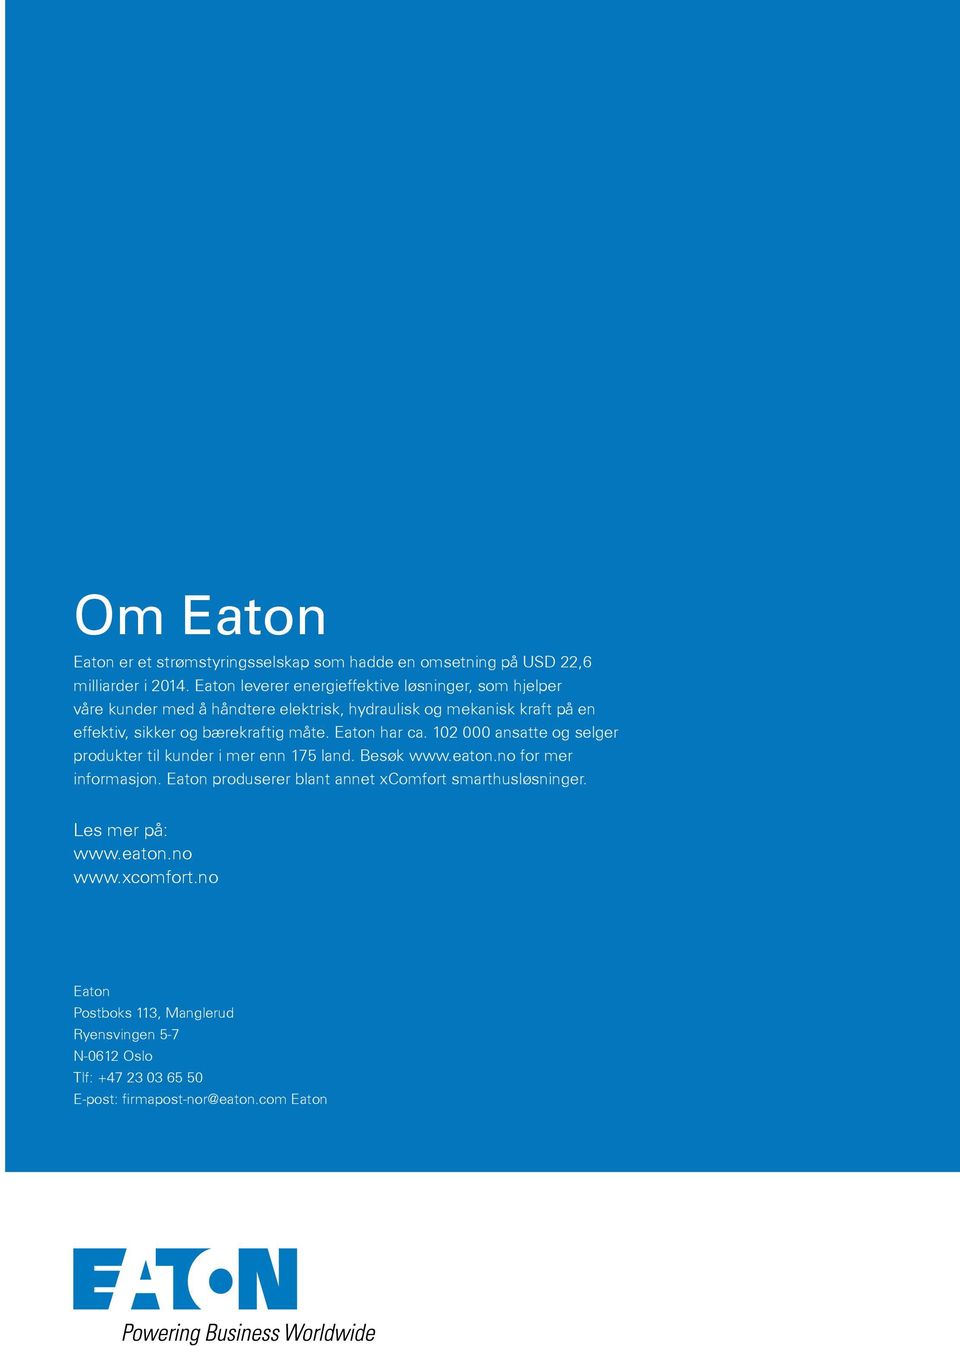 bærekraftig måte. Eaton har ca. 102 000 ansatte og selger produkter til kunder i mer enn 175 land. Besøk www.eaton.no for mer informasjon.